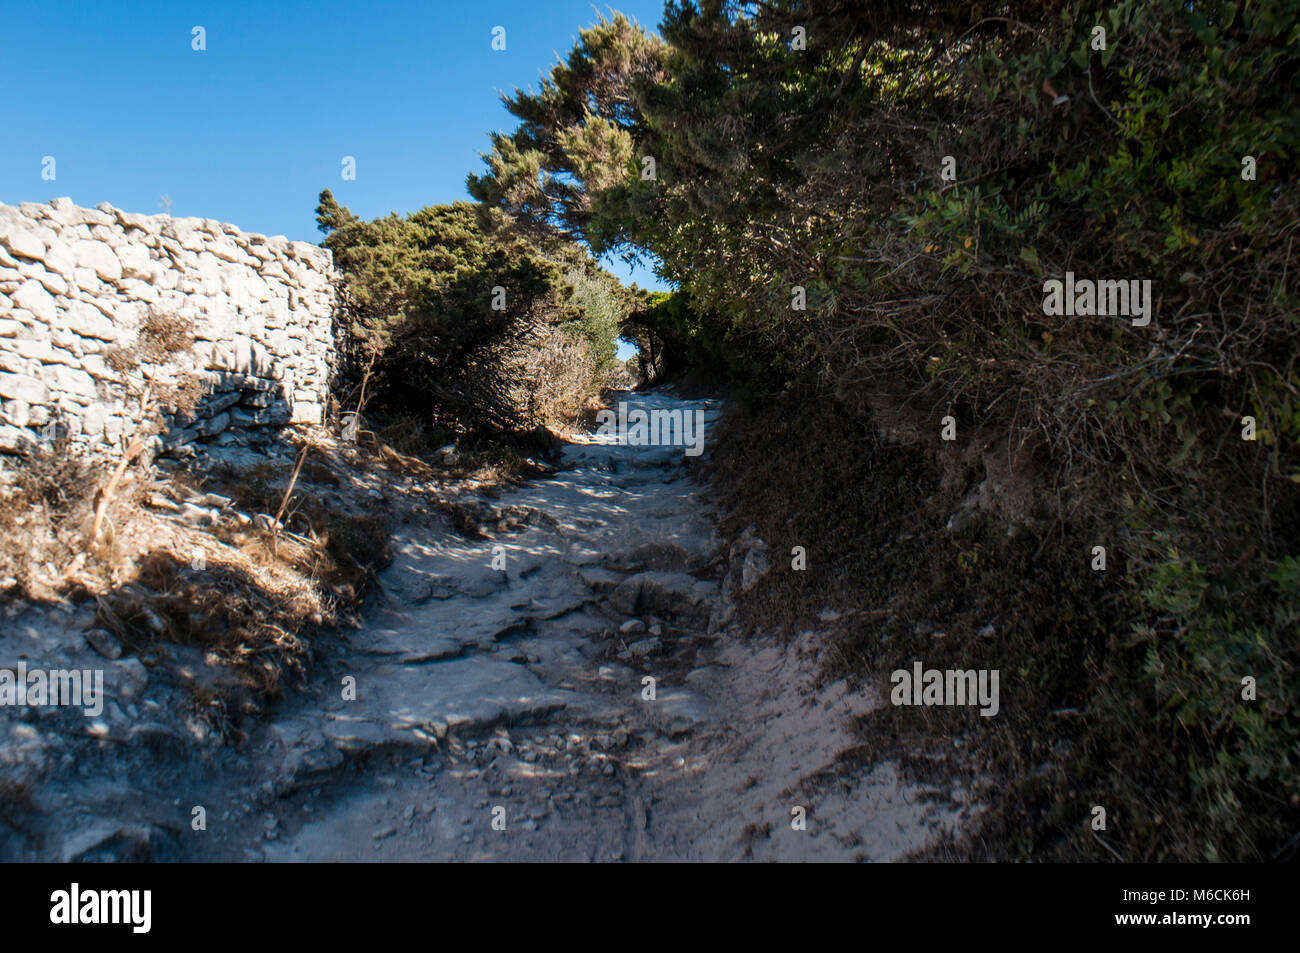 Corsica: Sentiero dell'International Bouches de Bonifacio parco marino, riserva naturale sulla bianca roccia calcarea nello Stretto di Bonifacio Foto Stock